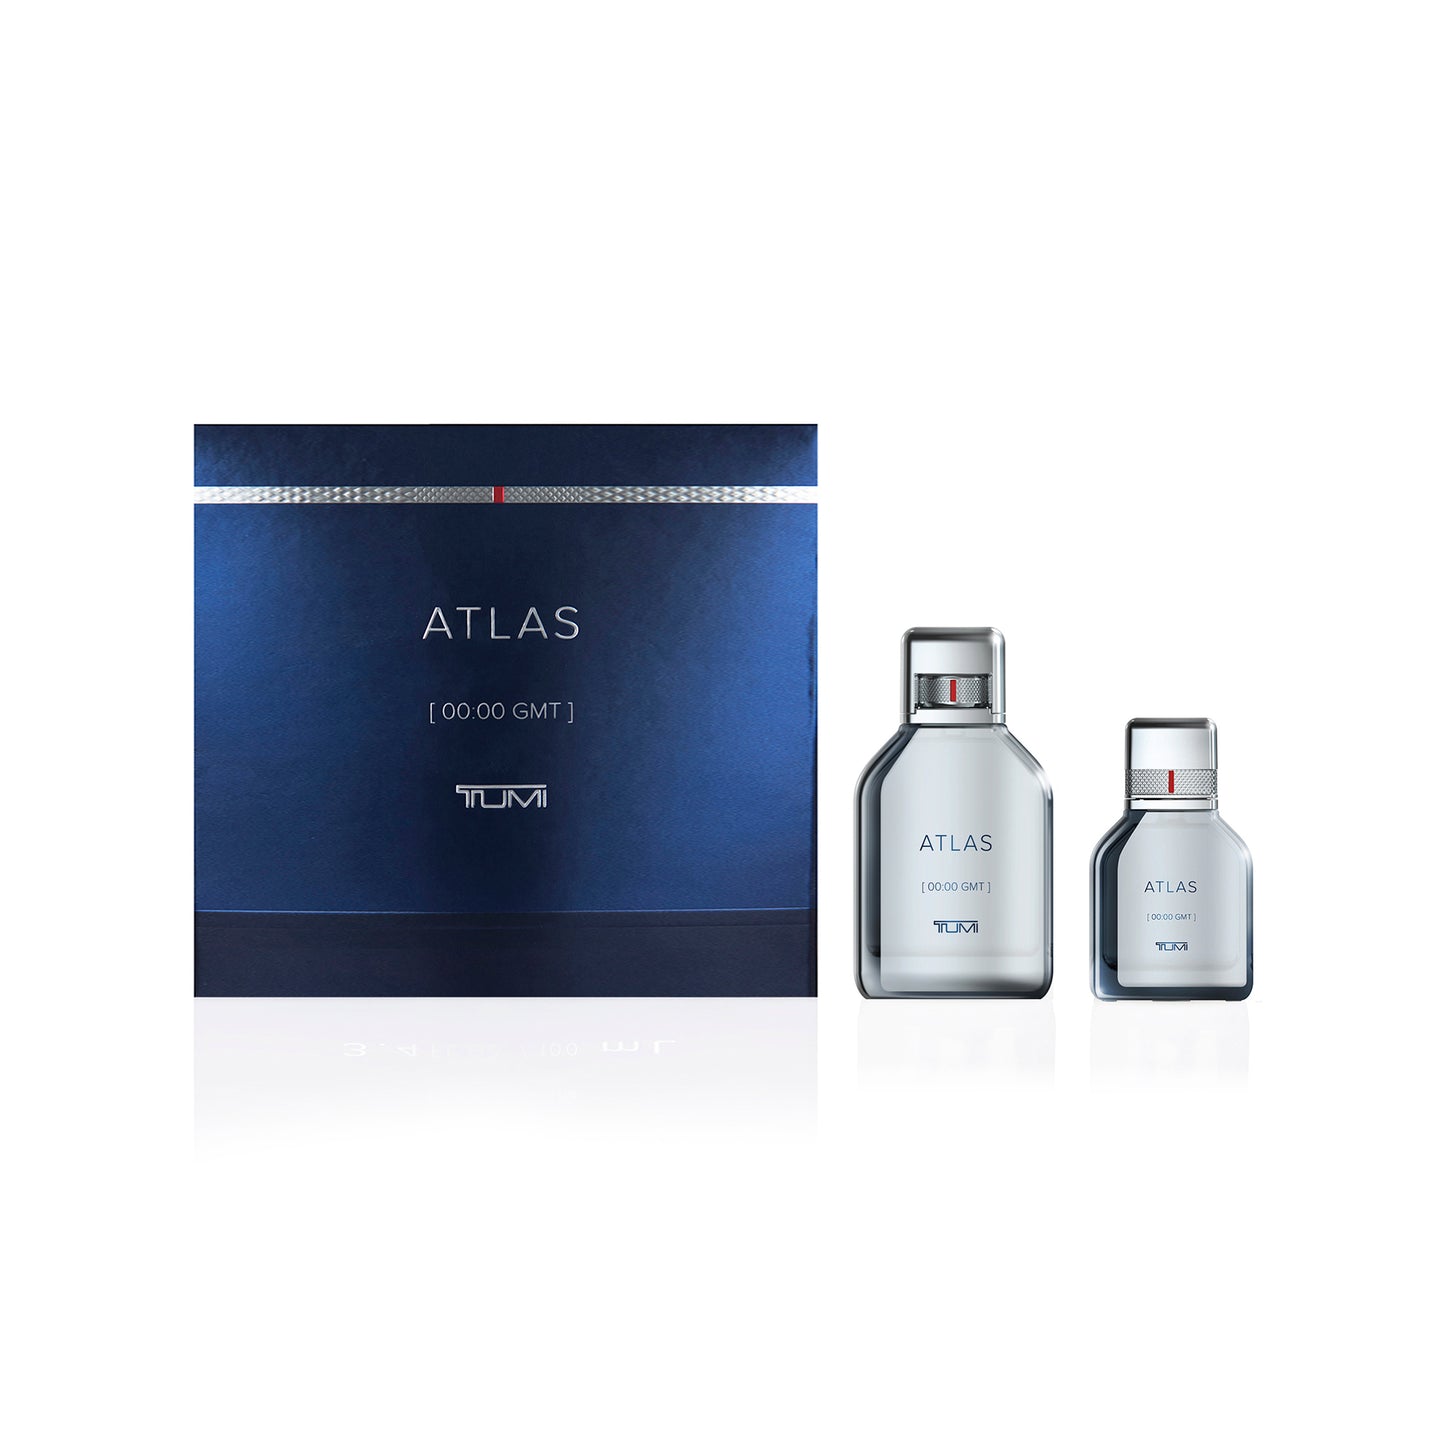 ATLAS [00:00 GMT] TUMI - 3.4 oz + 1.0 oz Eau de Parfum Gift Set